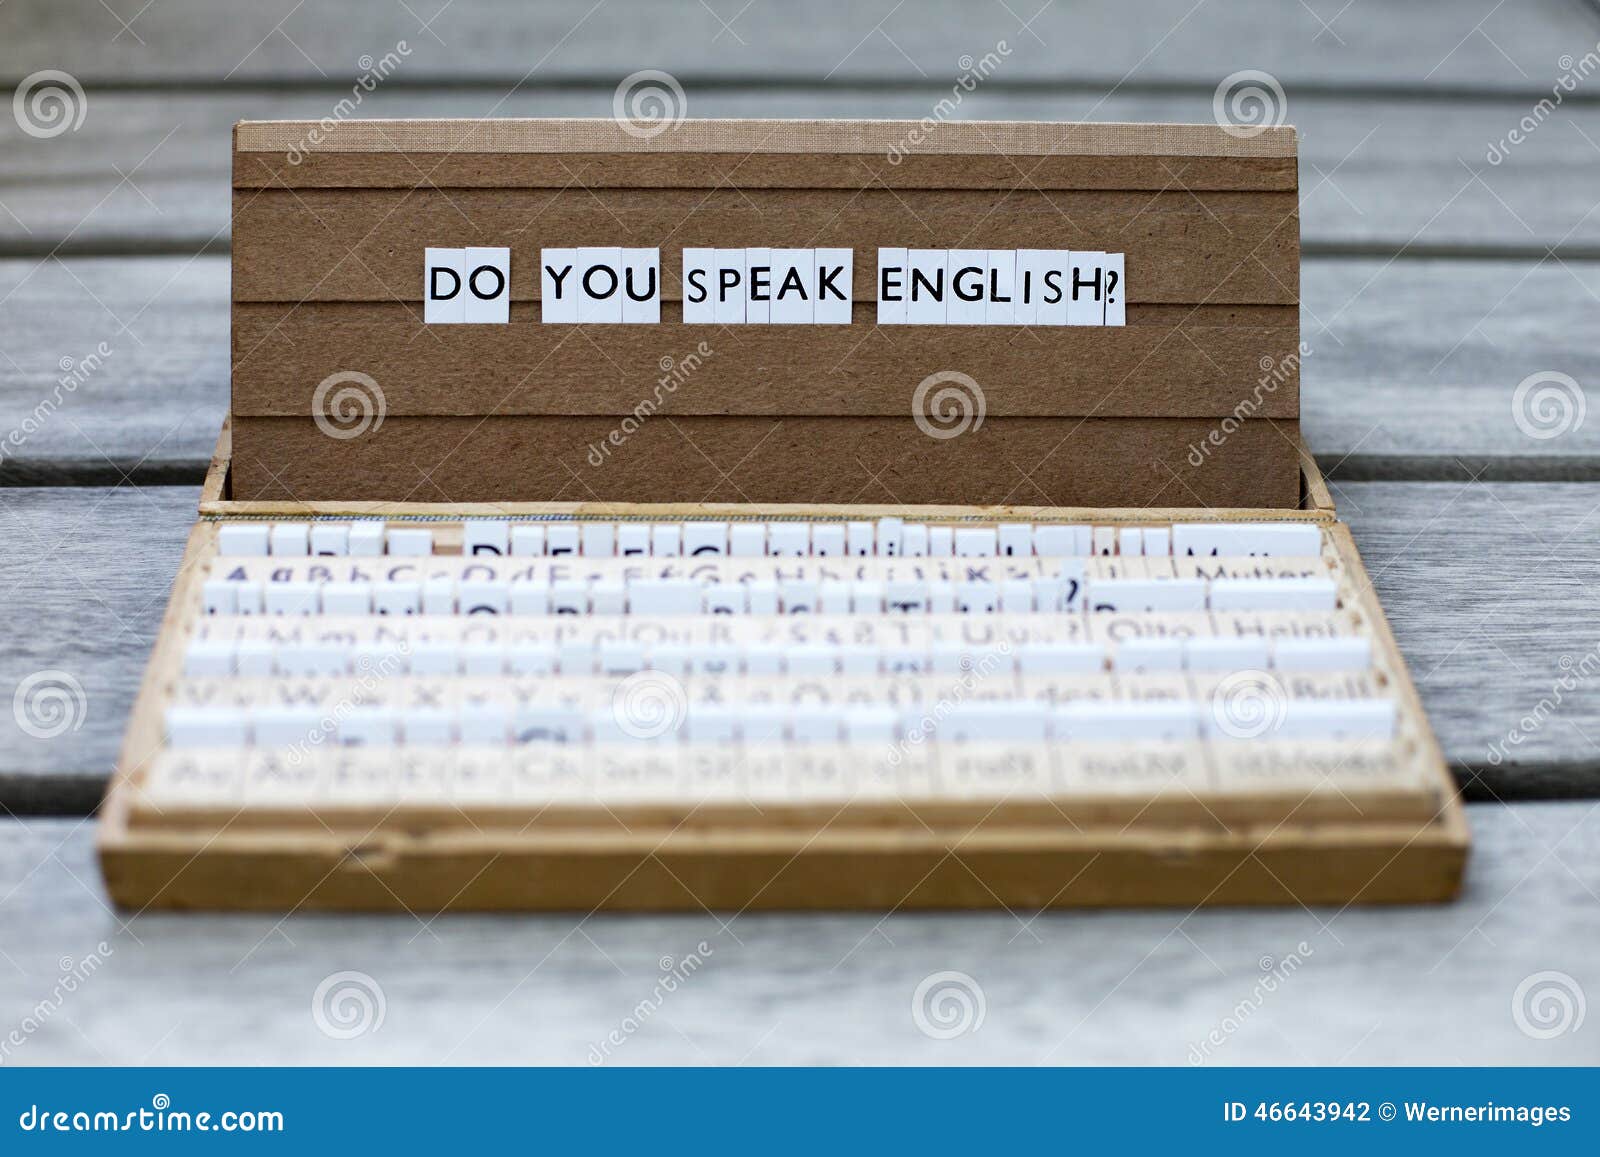 Do you speak good english. Английский язык do you speak. Do you speak English картинки. Ты говоришь по английски. Школьная доска do you speak English.